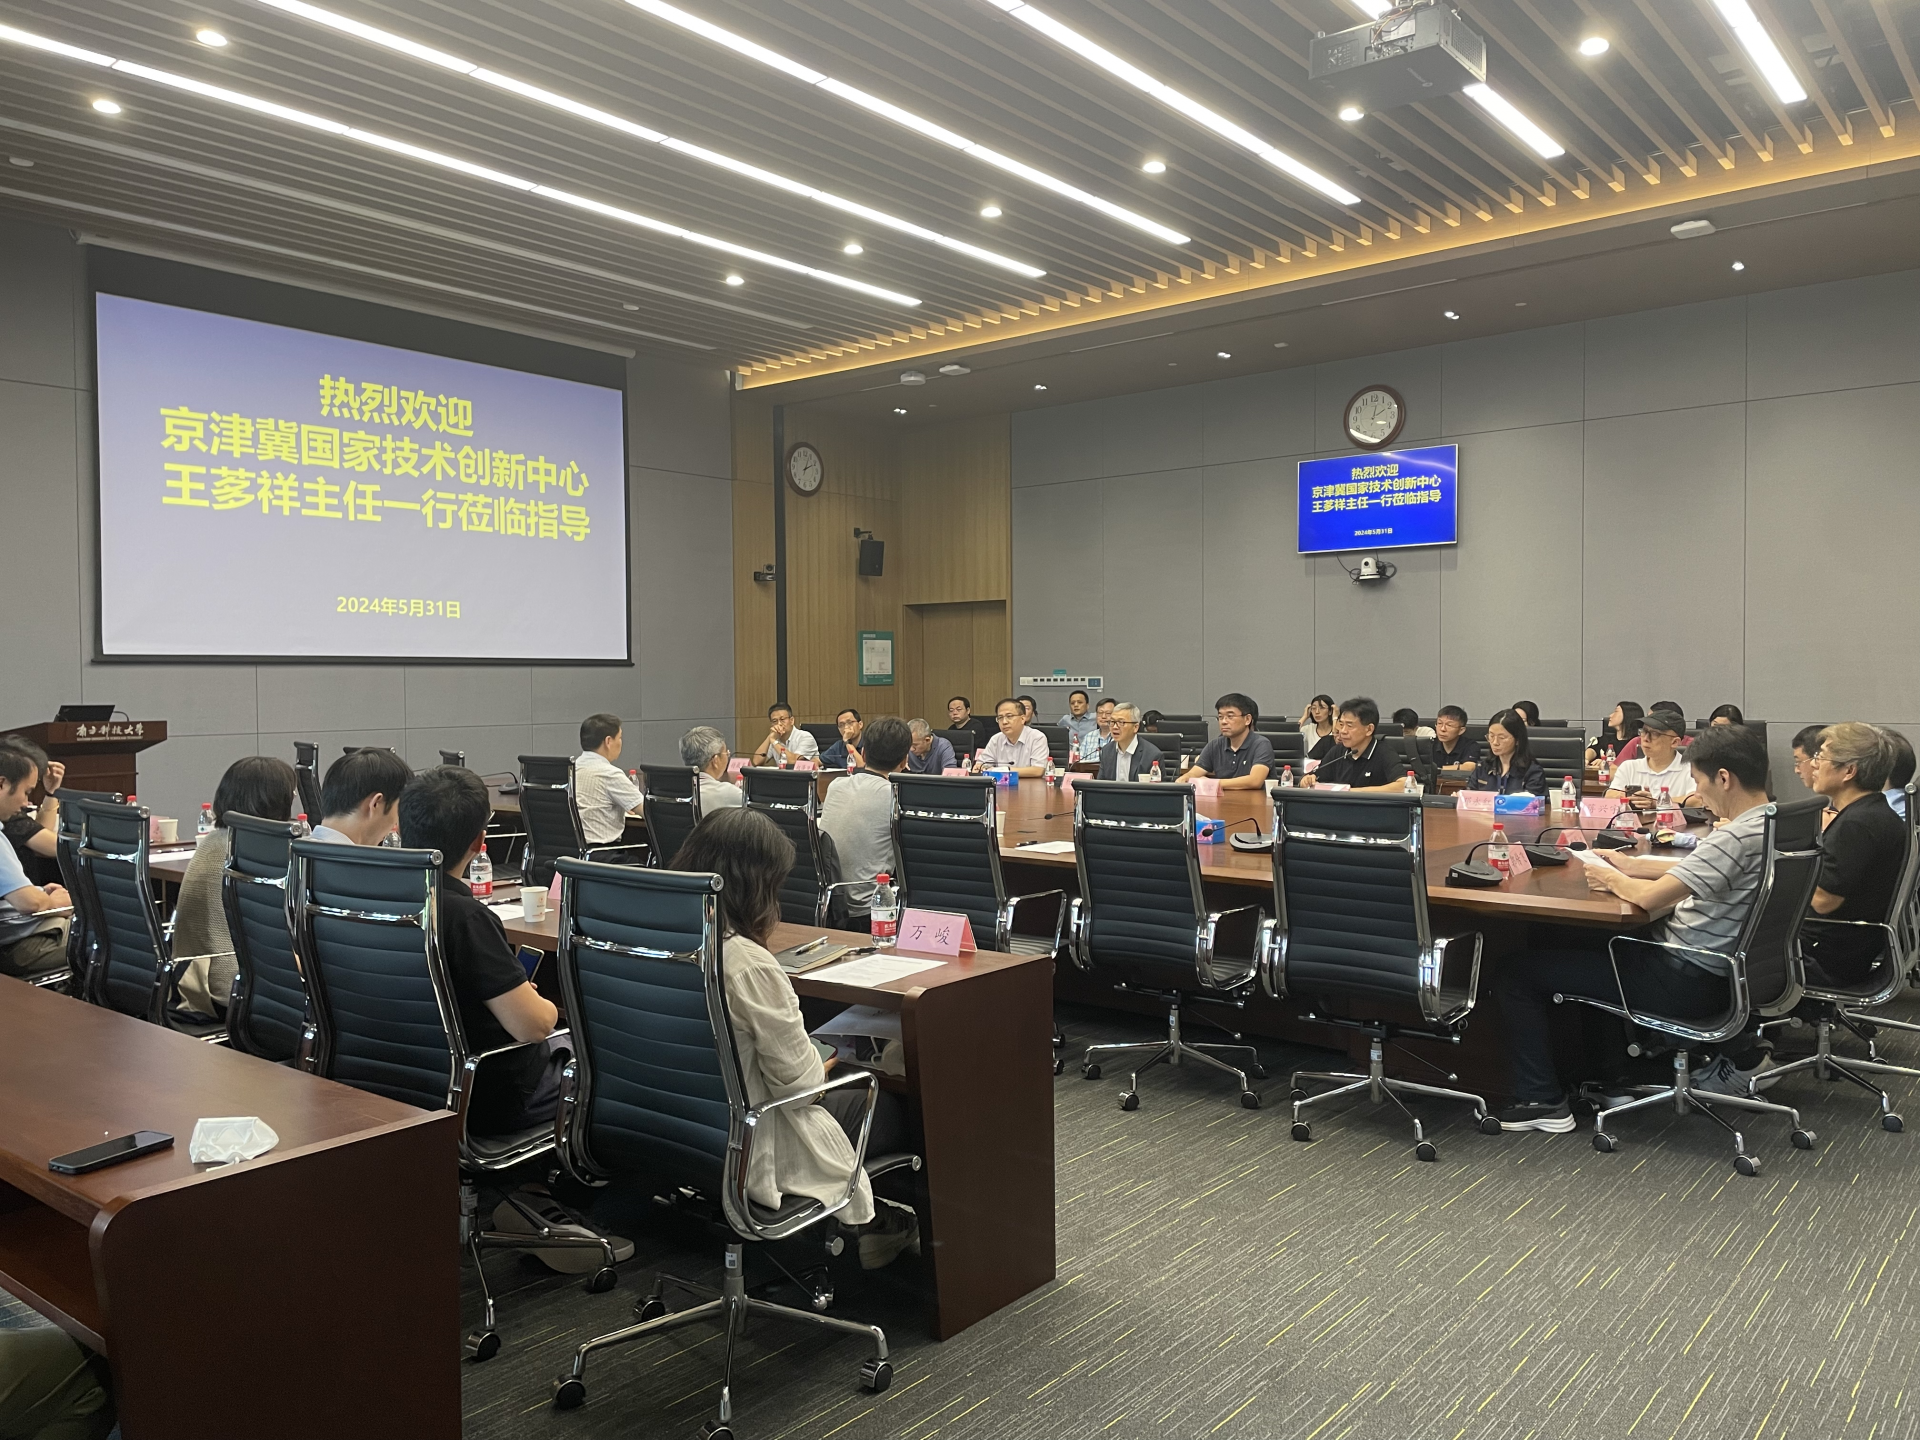 Delegation from Jingjinji National Center of Technology Innovation visits SUSTech